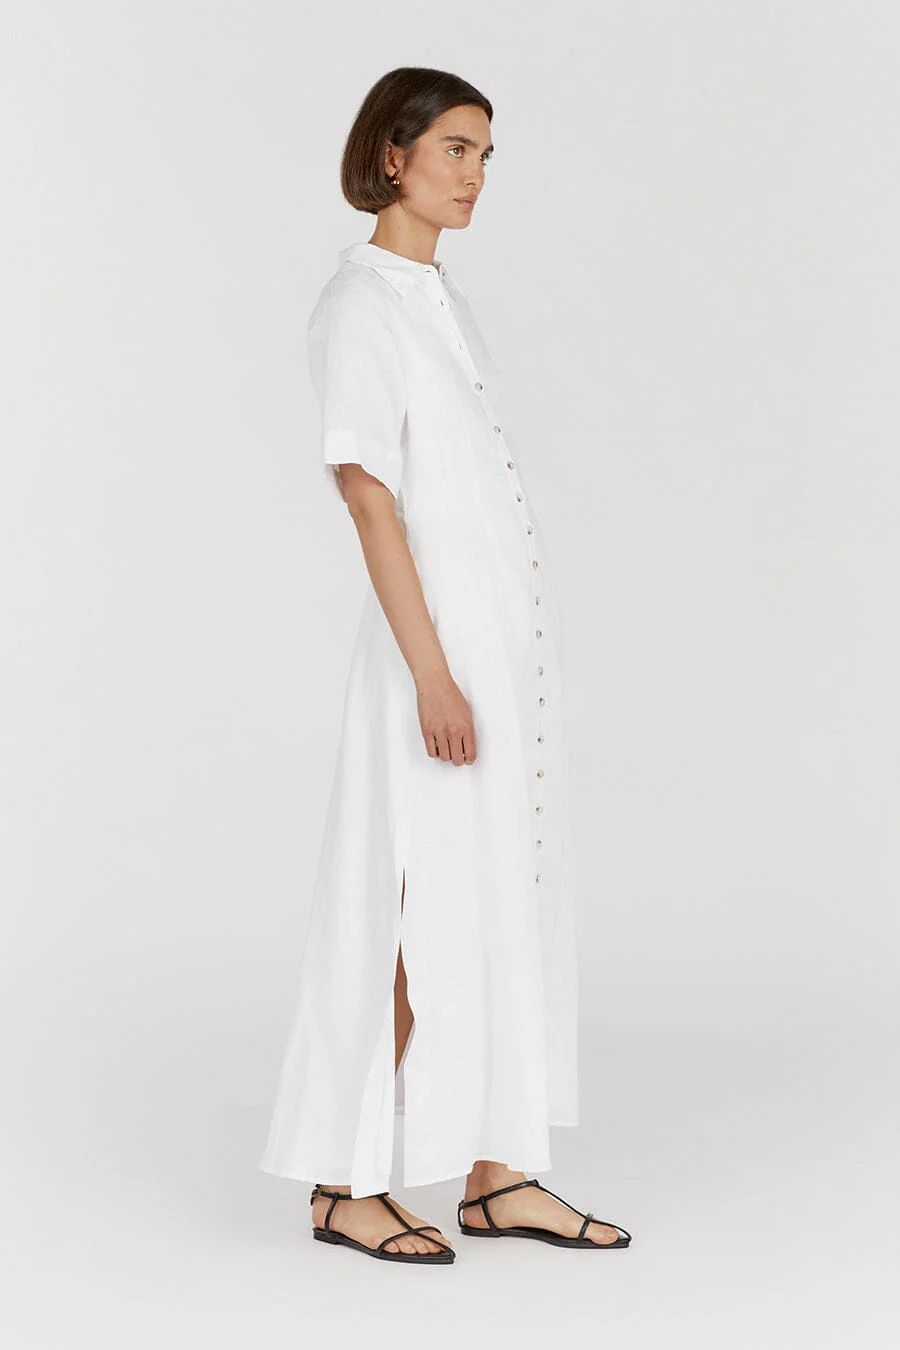 FRANNIE WHITE LINEN SHIRT DRESS | DISSH